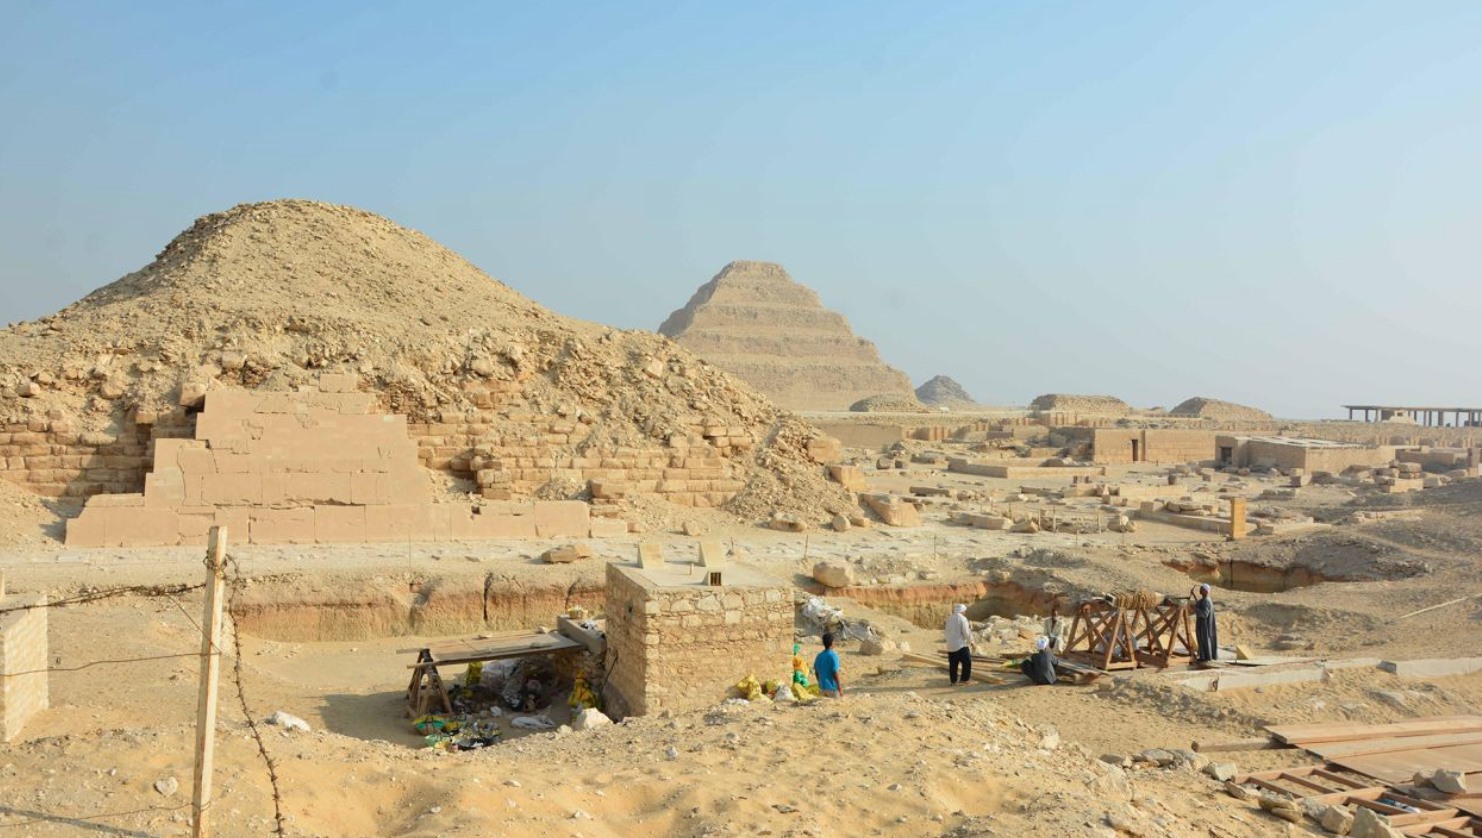 Khu vực khai quật Dự án Lăng mộ Saqqara Saite nhìn ra kim tự tháp Unas và kim tự tháp bậc thang Djoser. Ảnh: Dự án Lăng mộ Saqqara Saite